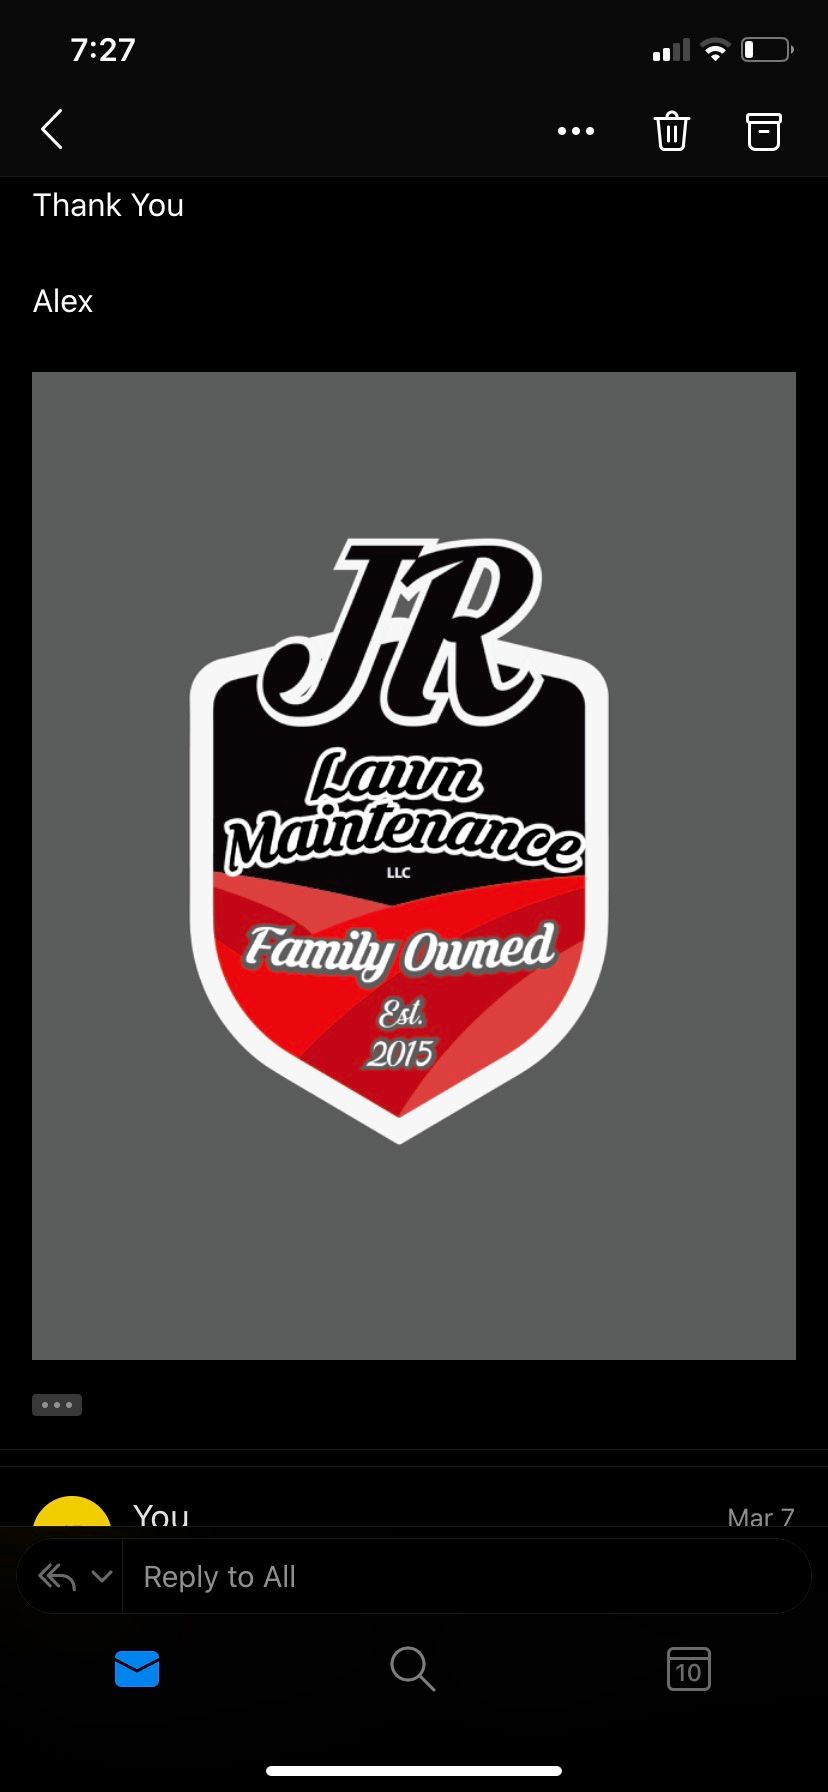 JR Lawn maintenance